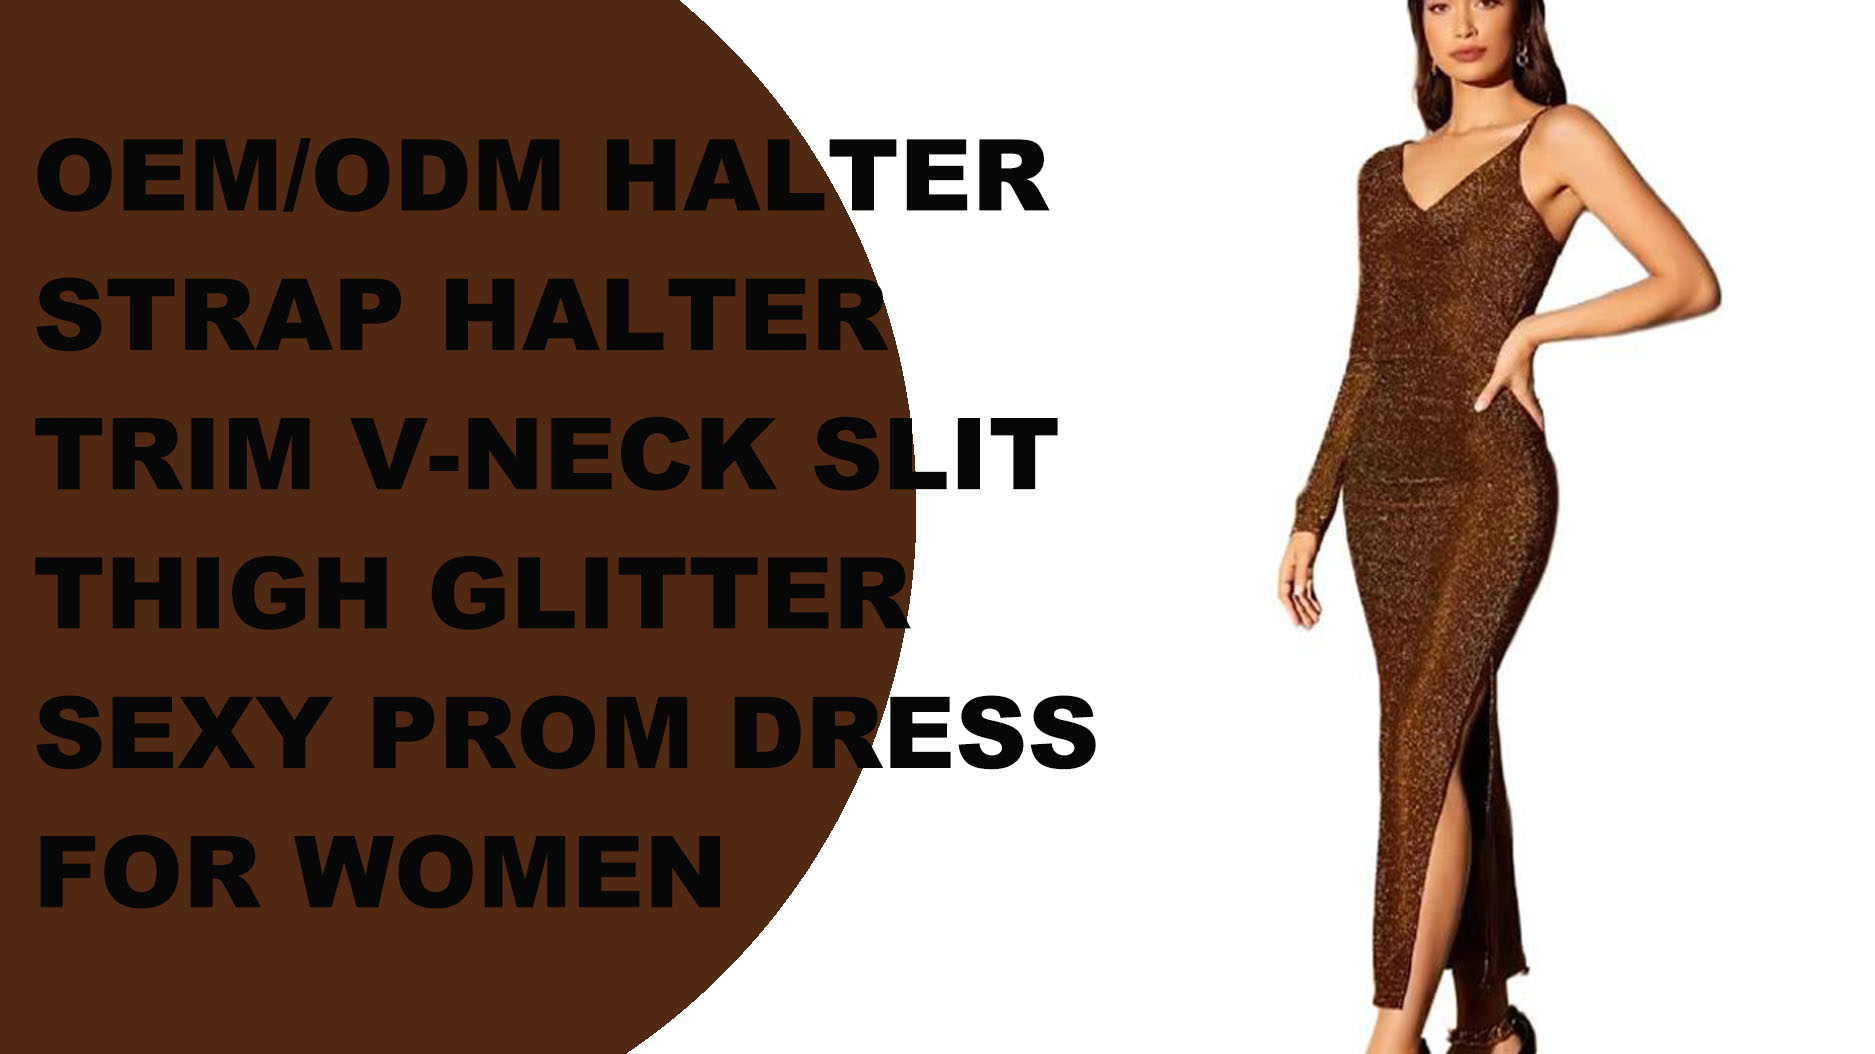 OEM/ODM Halter ժապավեն Halter Trim V-neck կտրվածք ազդրի փայլուն սեքսուալ ՊՐՈՄ զգեստ կանանց համար